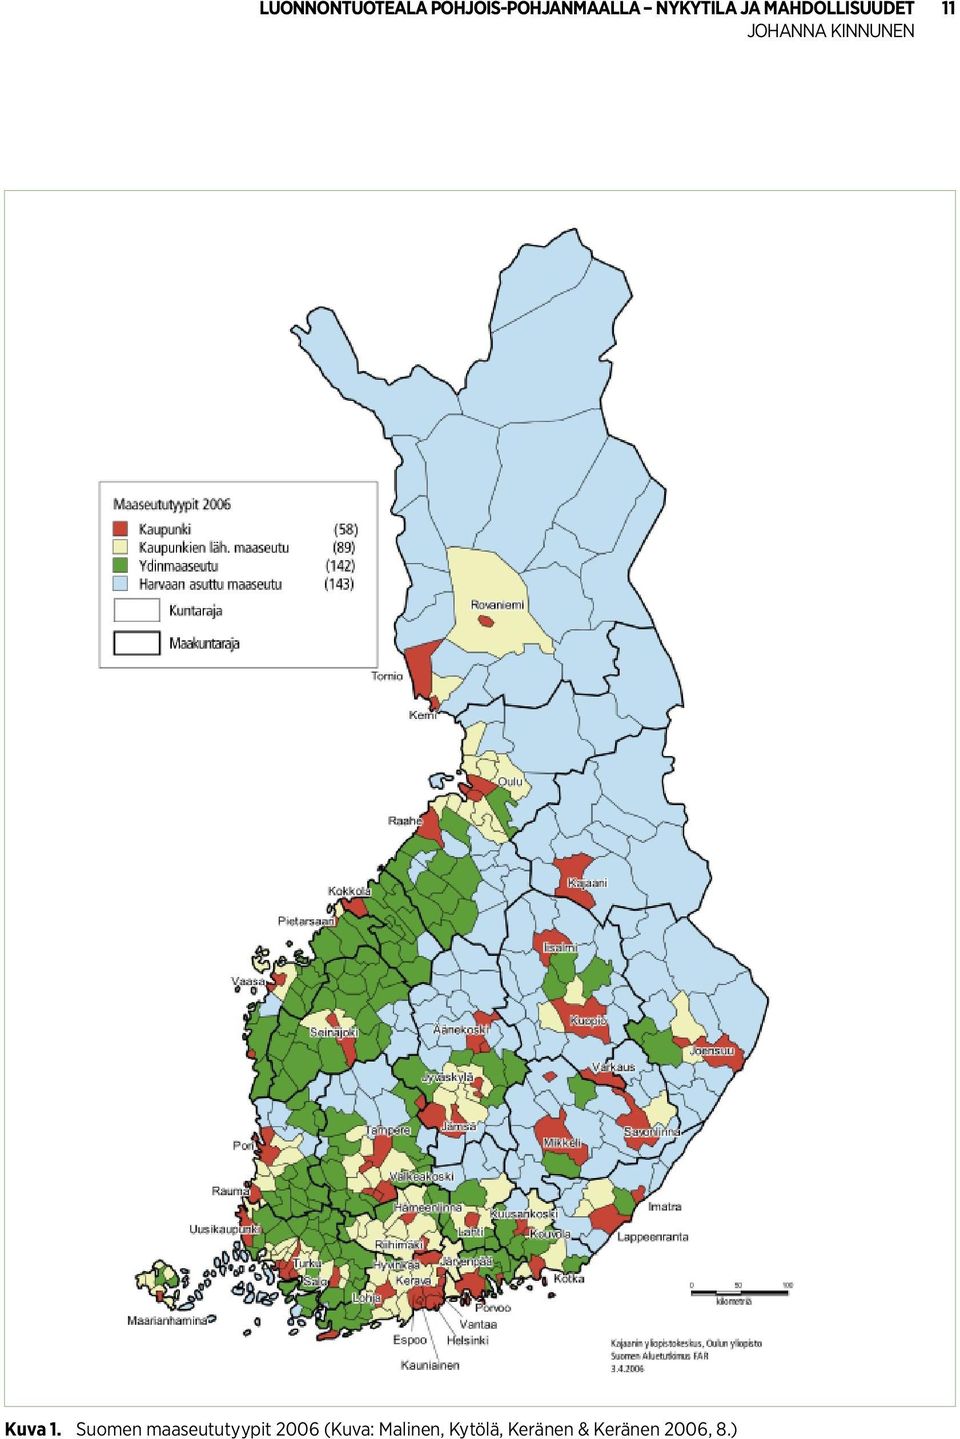 Suomen maaseututyypit 2006 (Kuva: